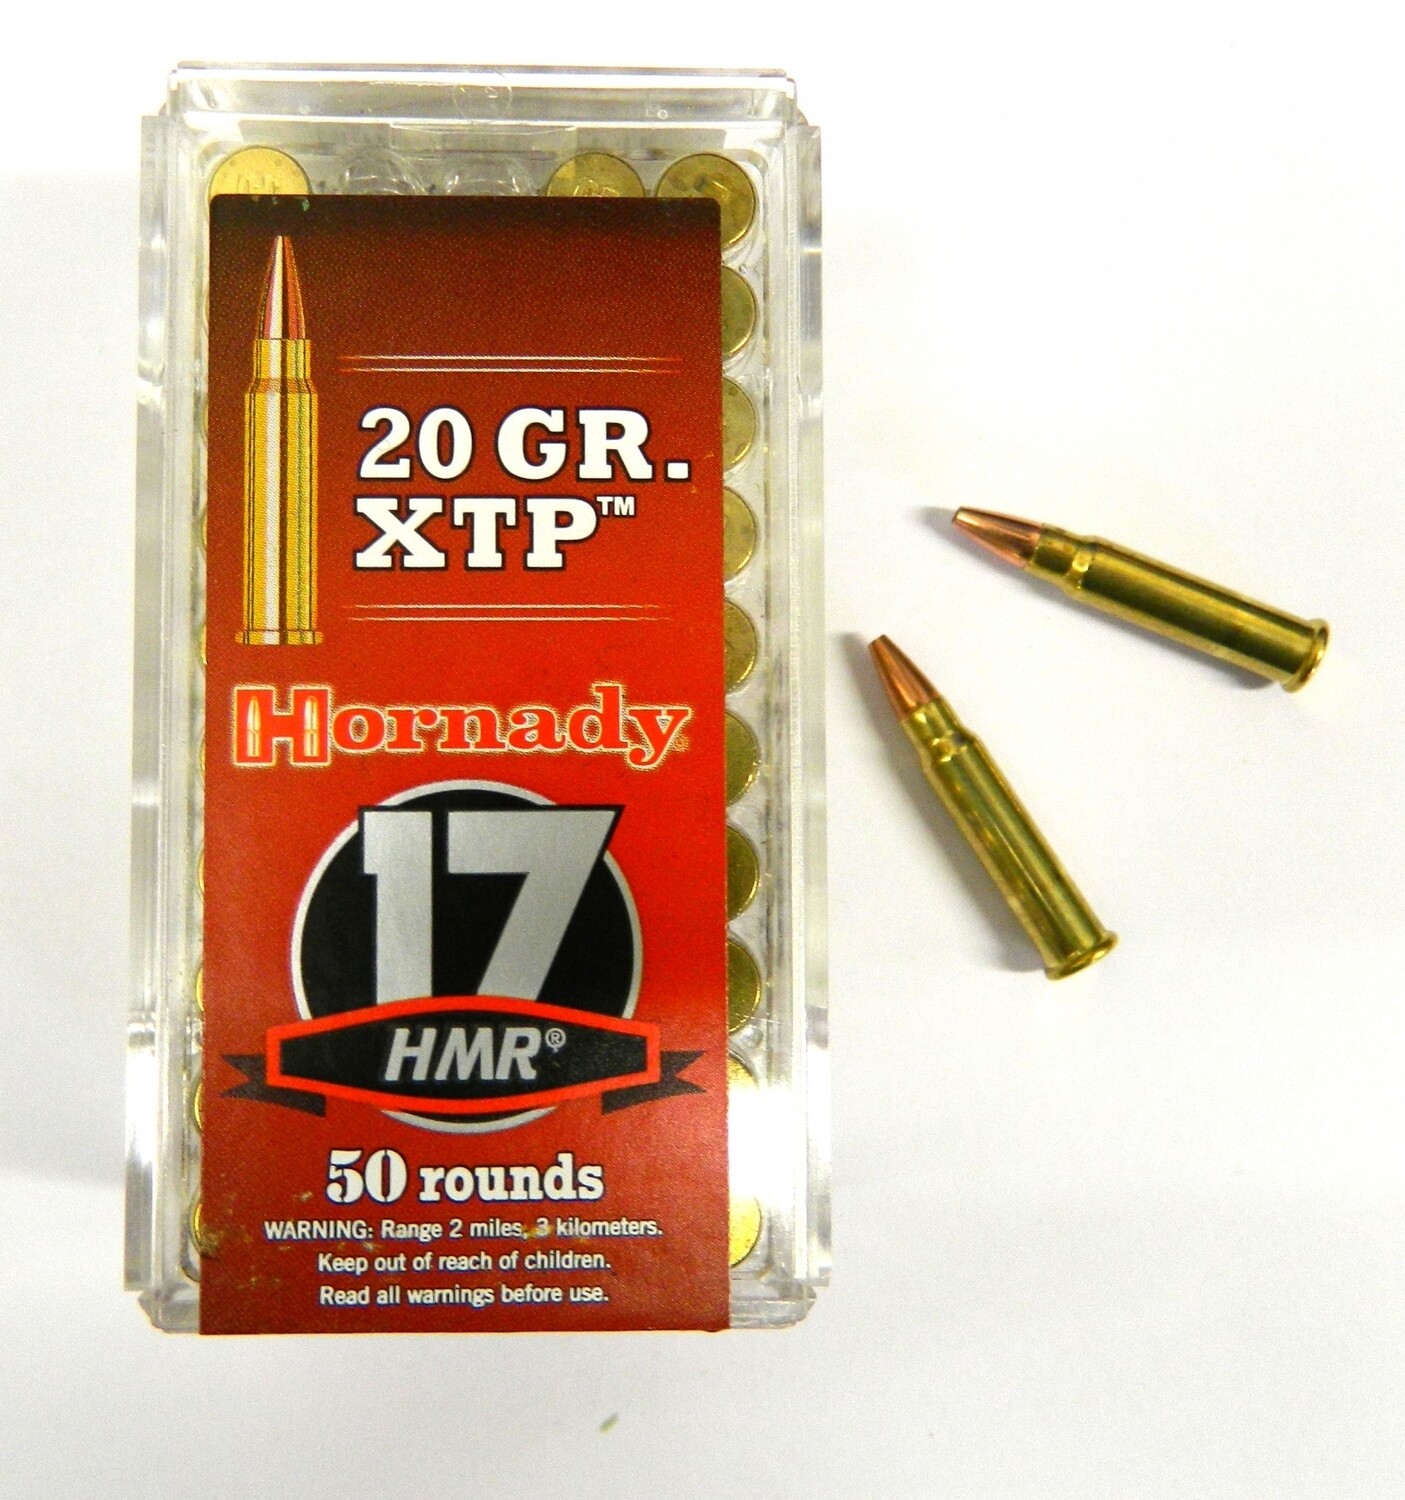 HORNADY 17 HMR 20 GR HP/XTP Box of 50 rounds